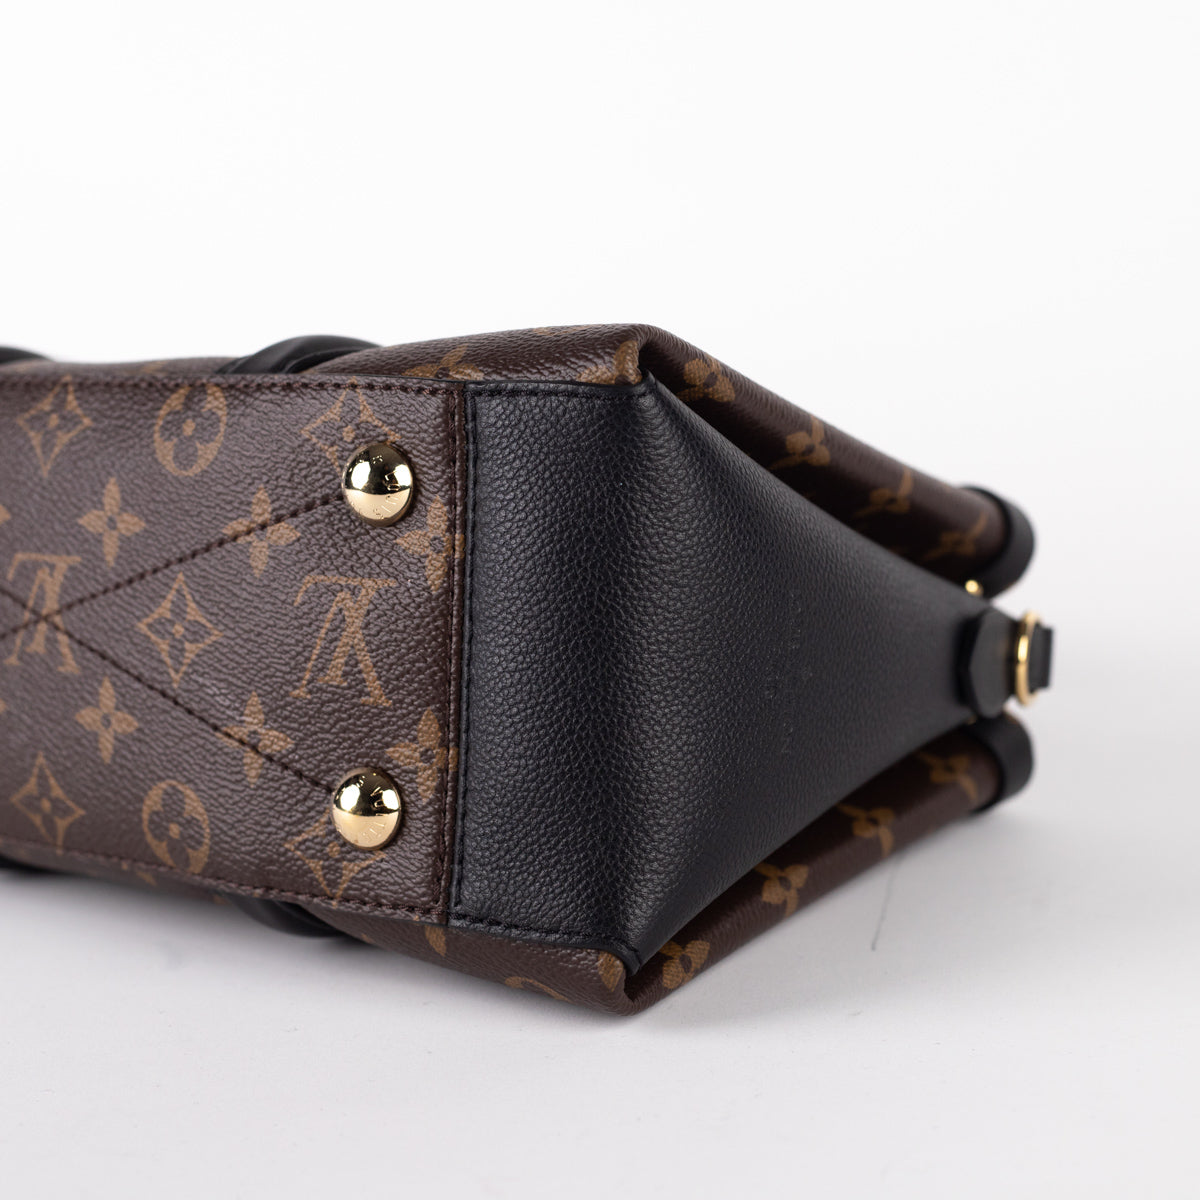 Louis Vuitton NéoNoé MM - ShopStyle Satchels & Top Handle Bags